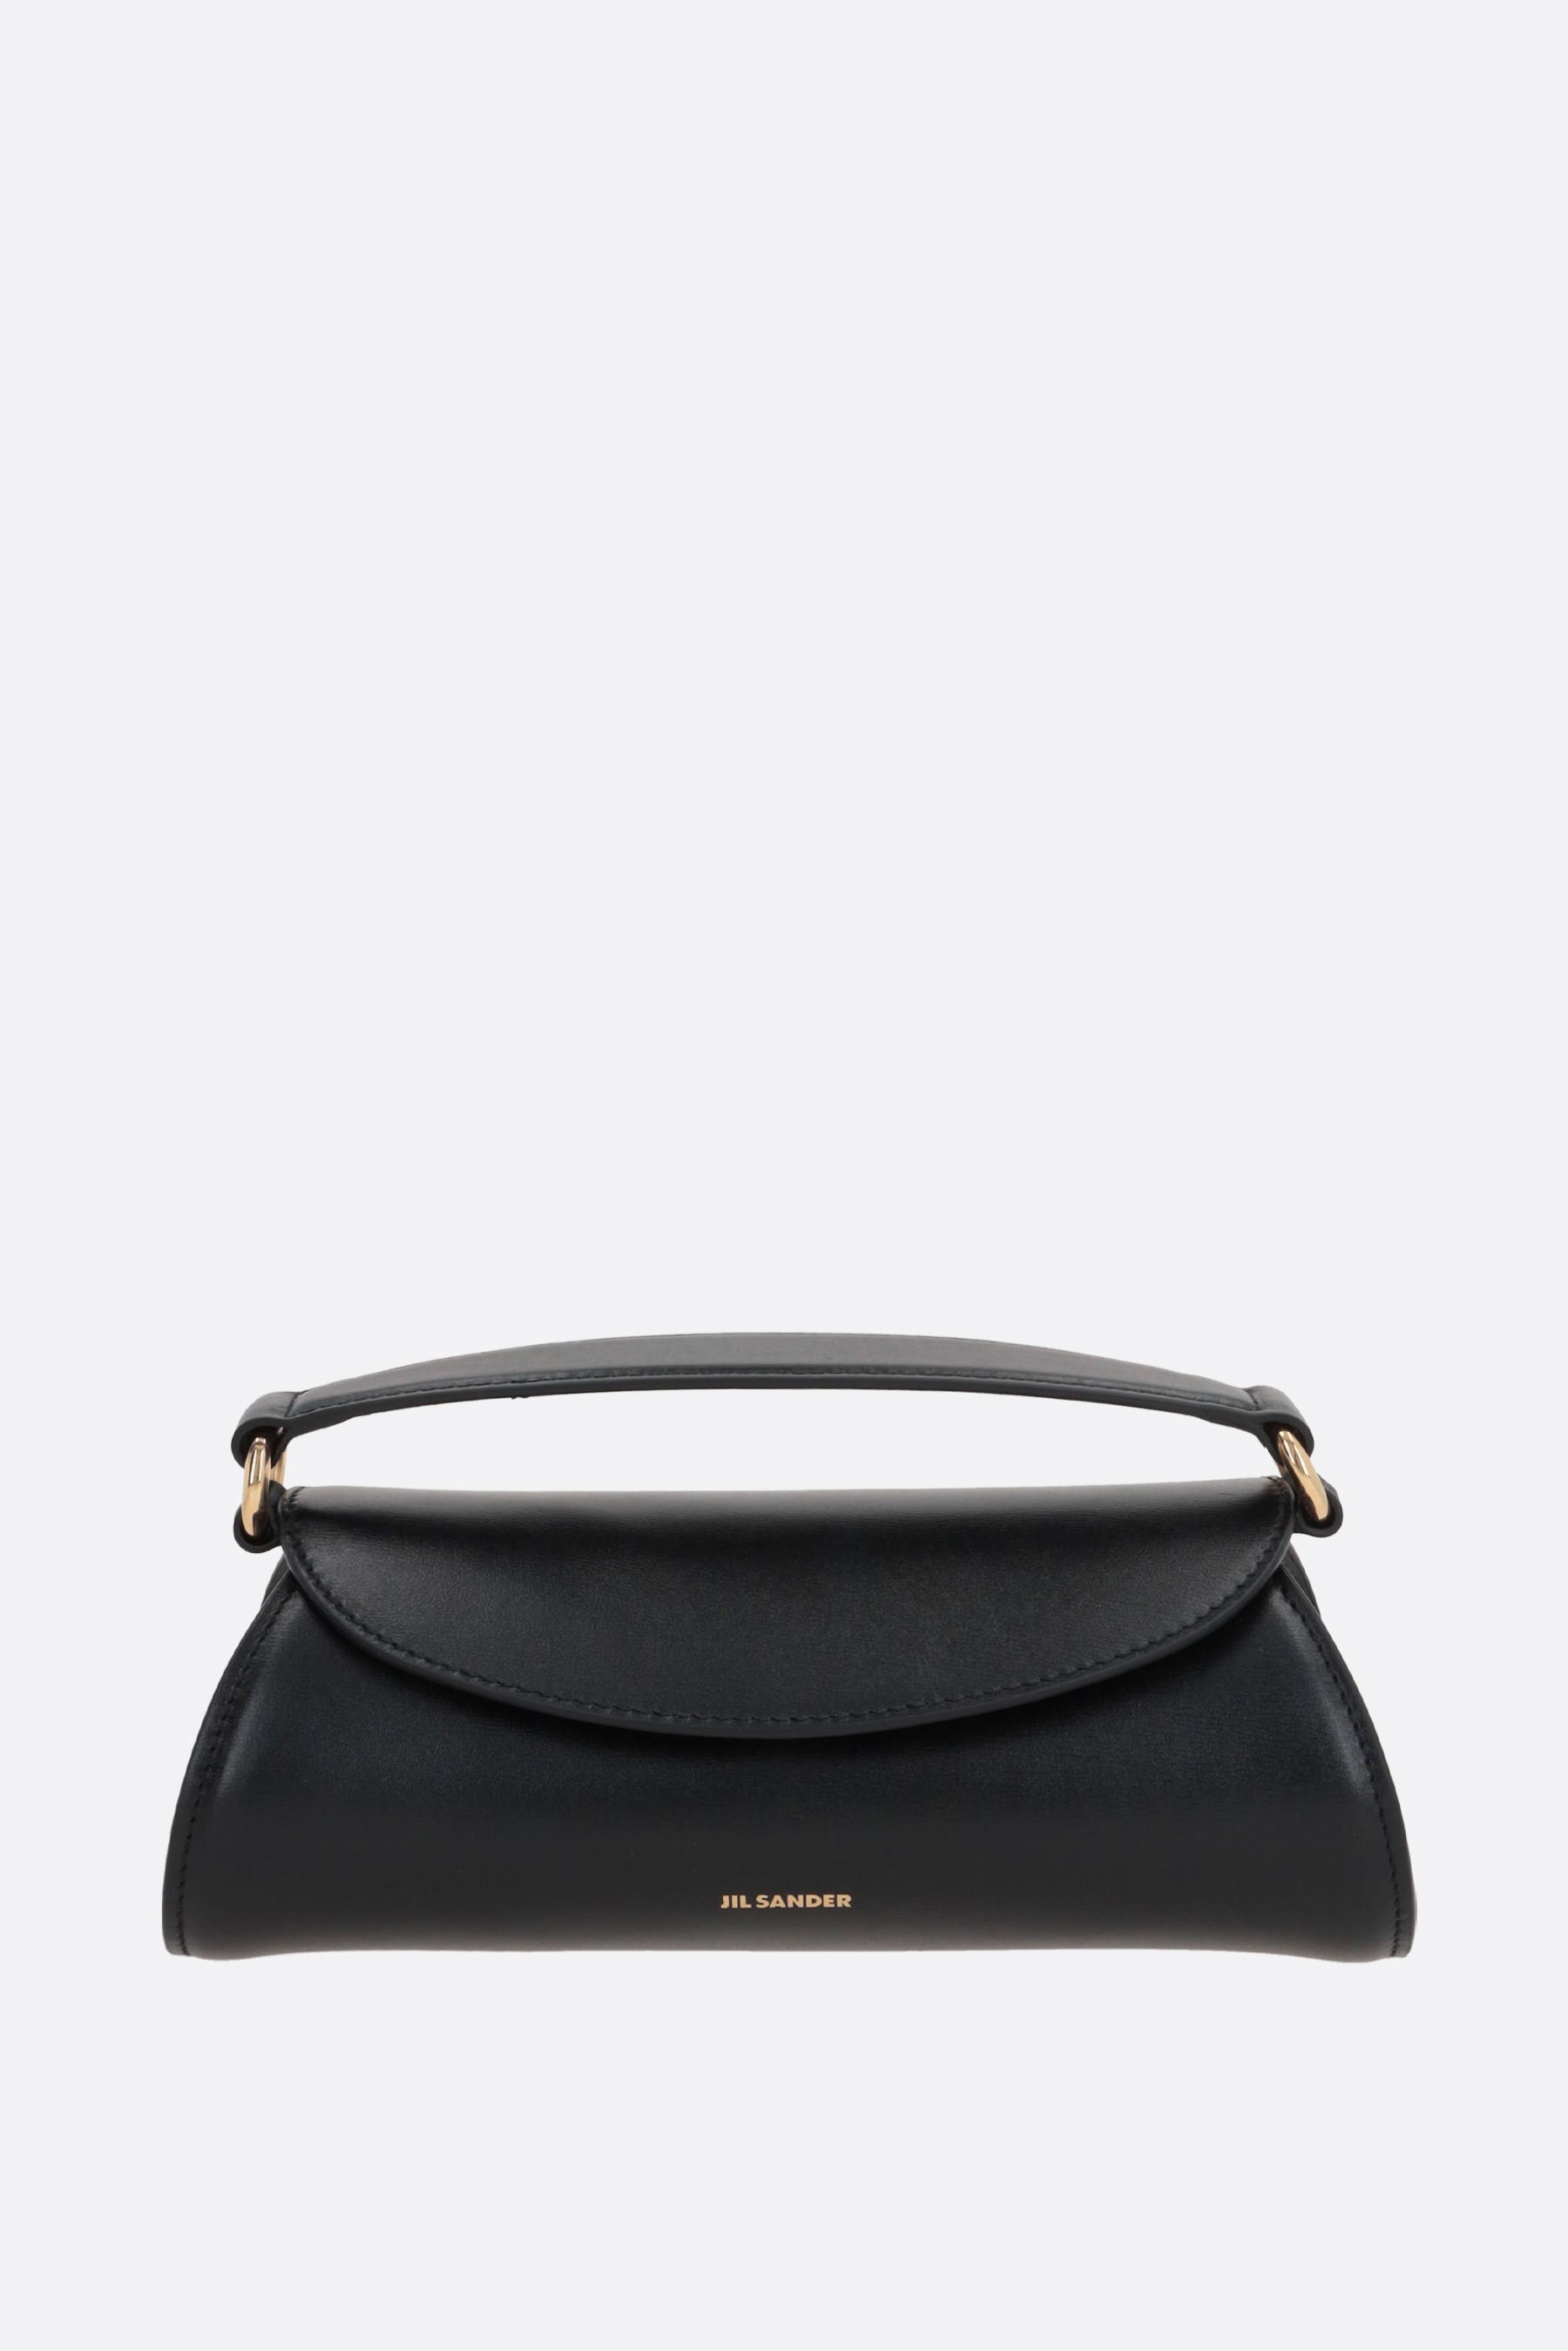 Cannolo mini smooth leather handbag